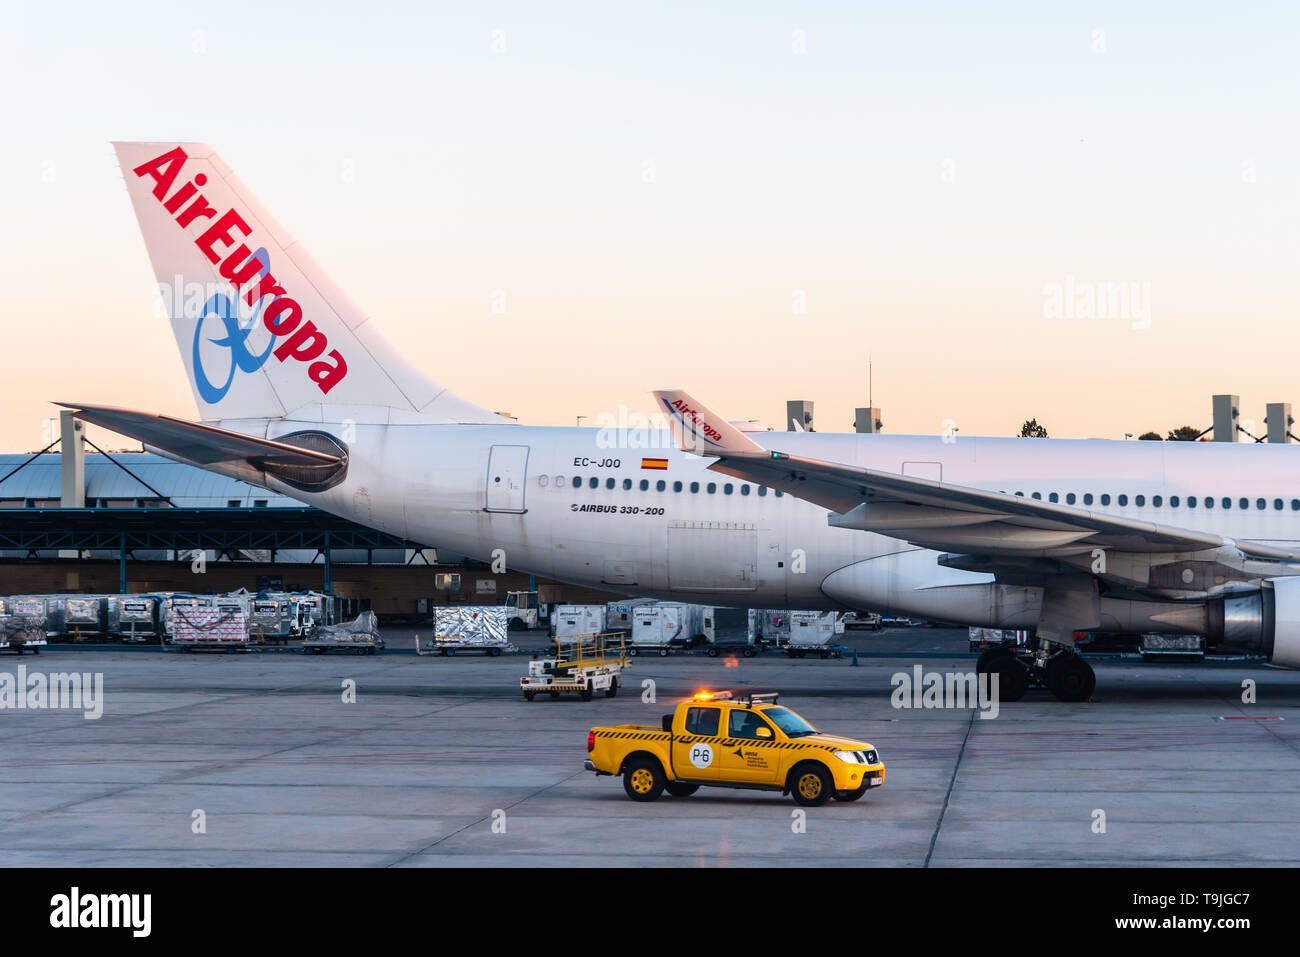 Madrid, Spagna - 14 Maggio 2019: Airbus 330-200 ad un basso costo della compagnia aerea Air Europa in una pista di aeroporto internazionale di Madrid un giorno chiaro di sunrise Foto Stock